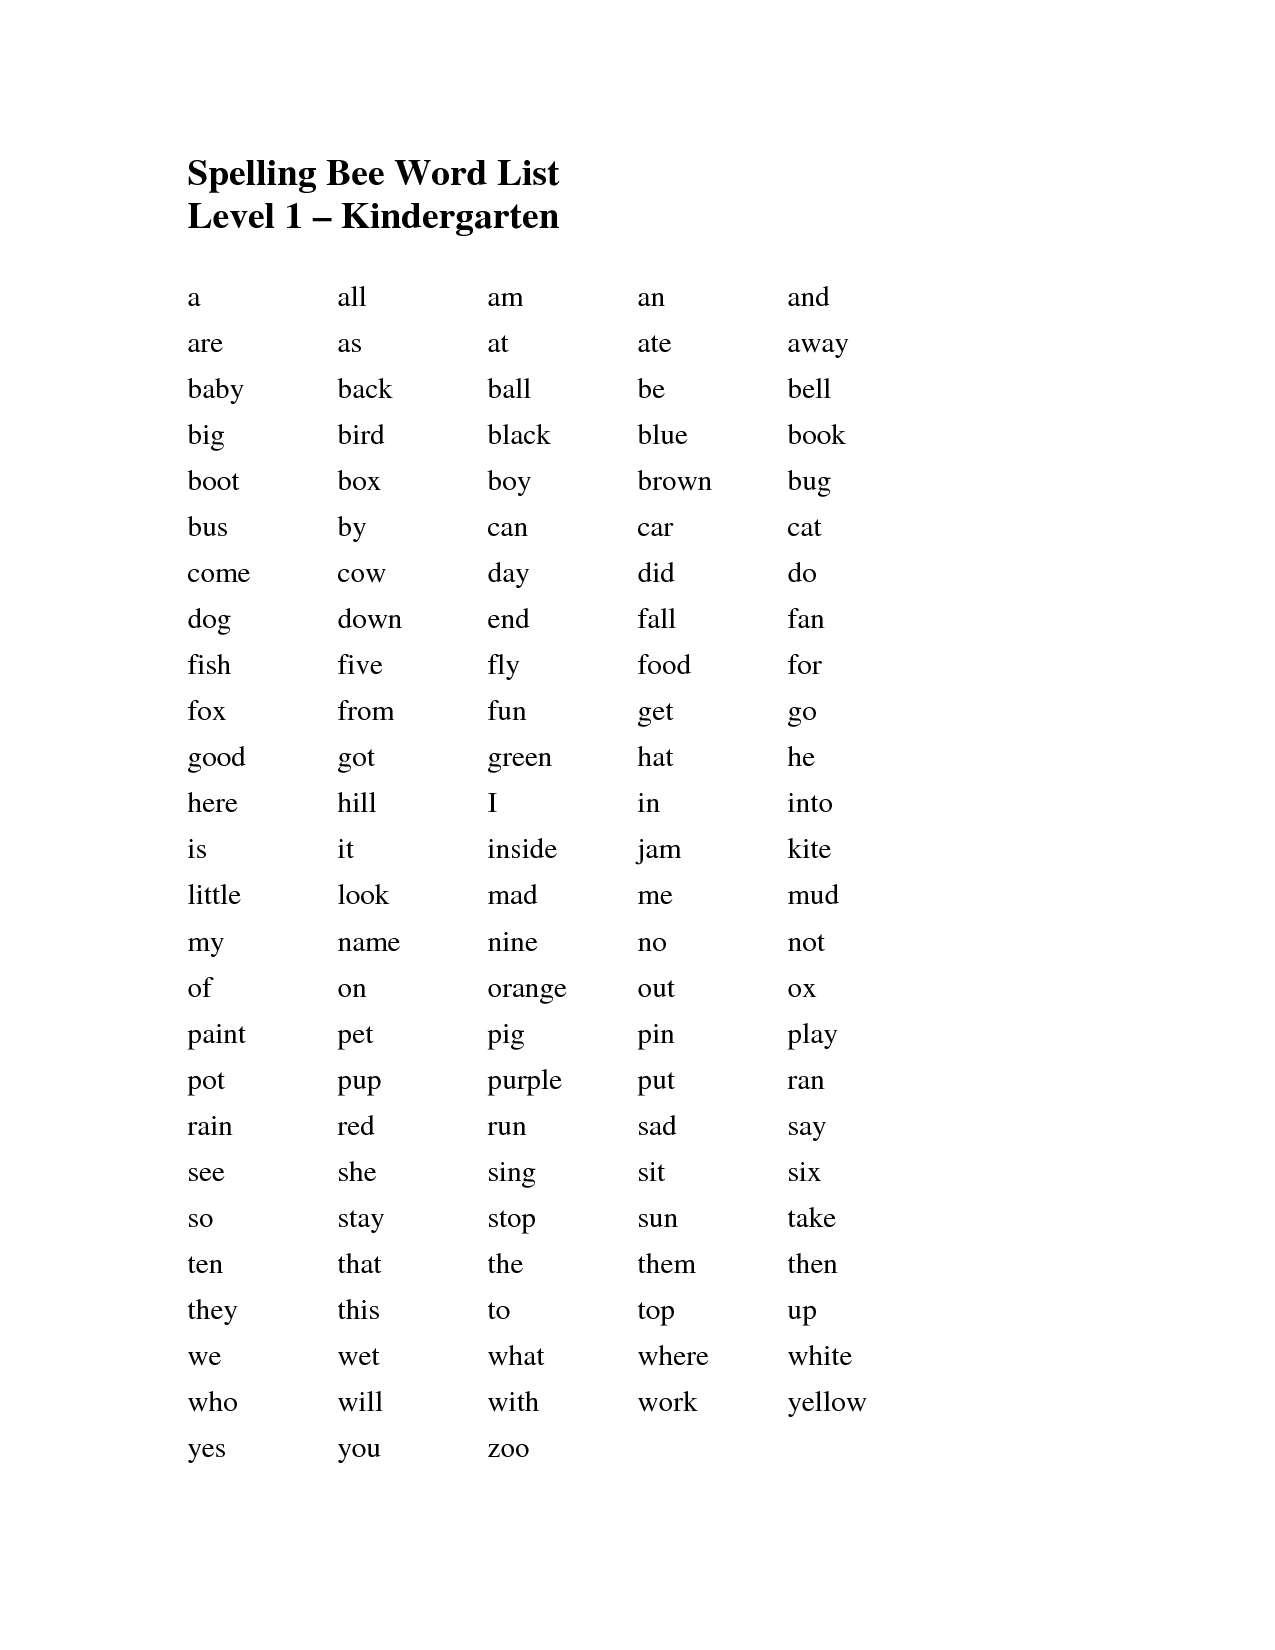 Spelling Bee Word List Kindergarten Image